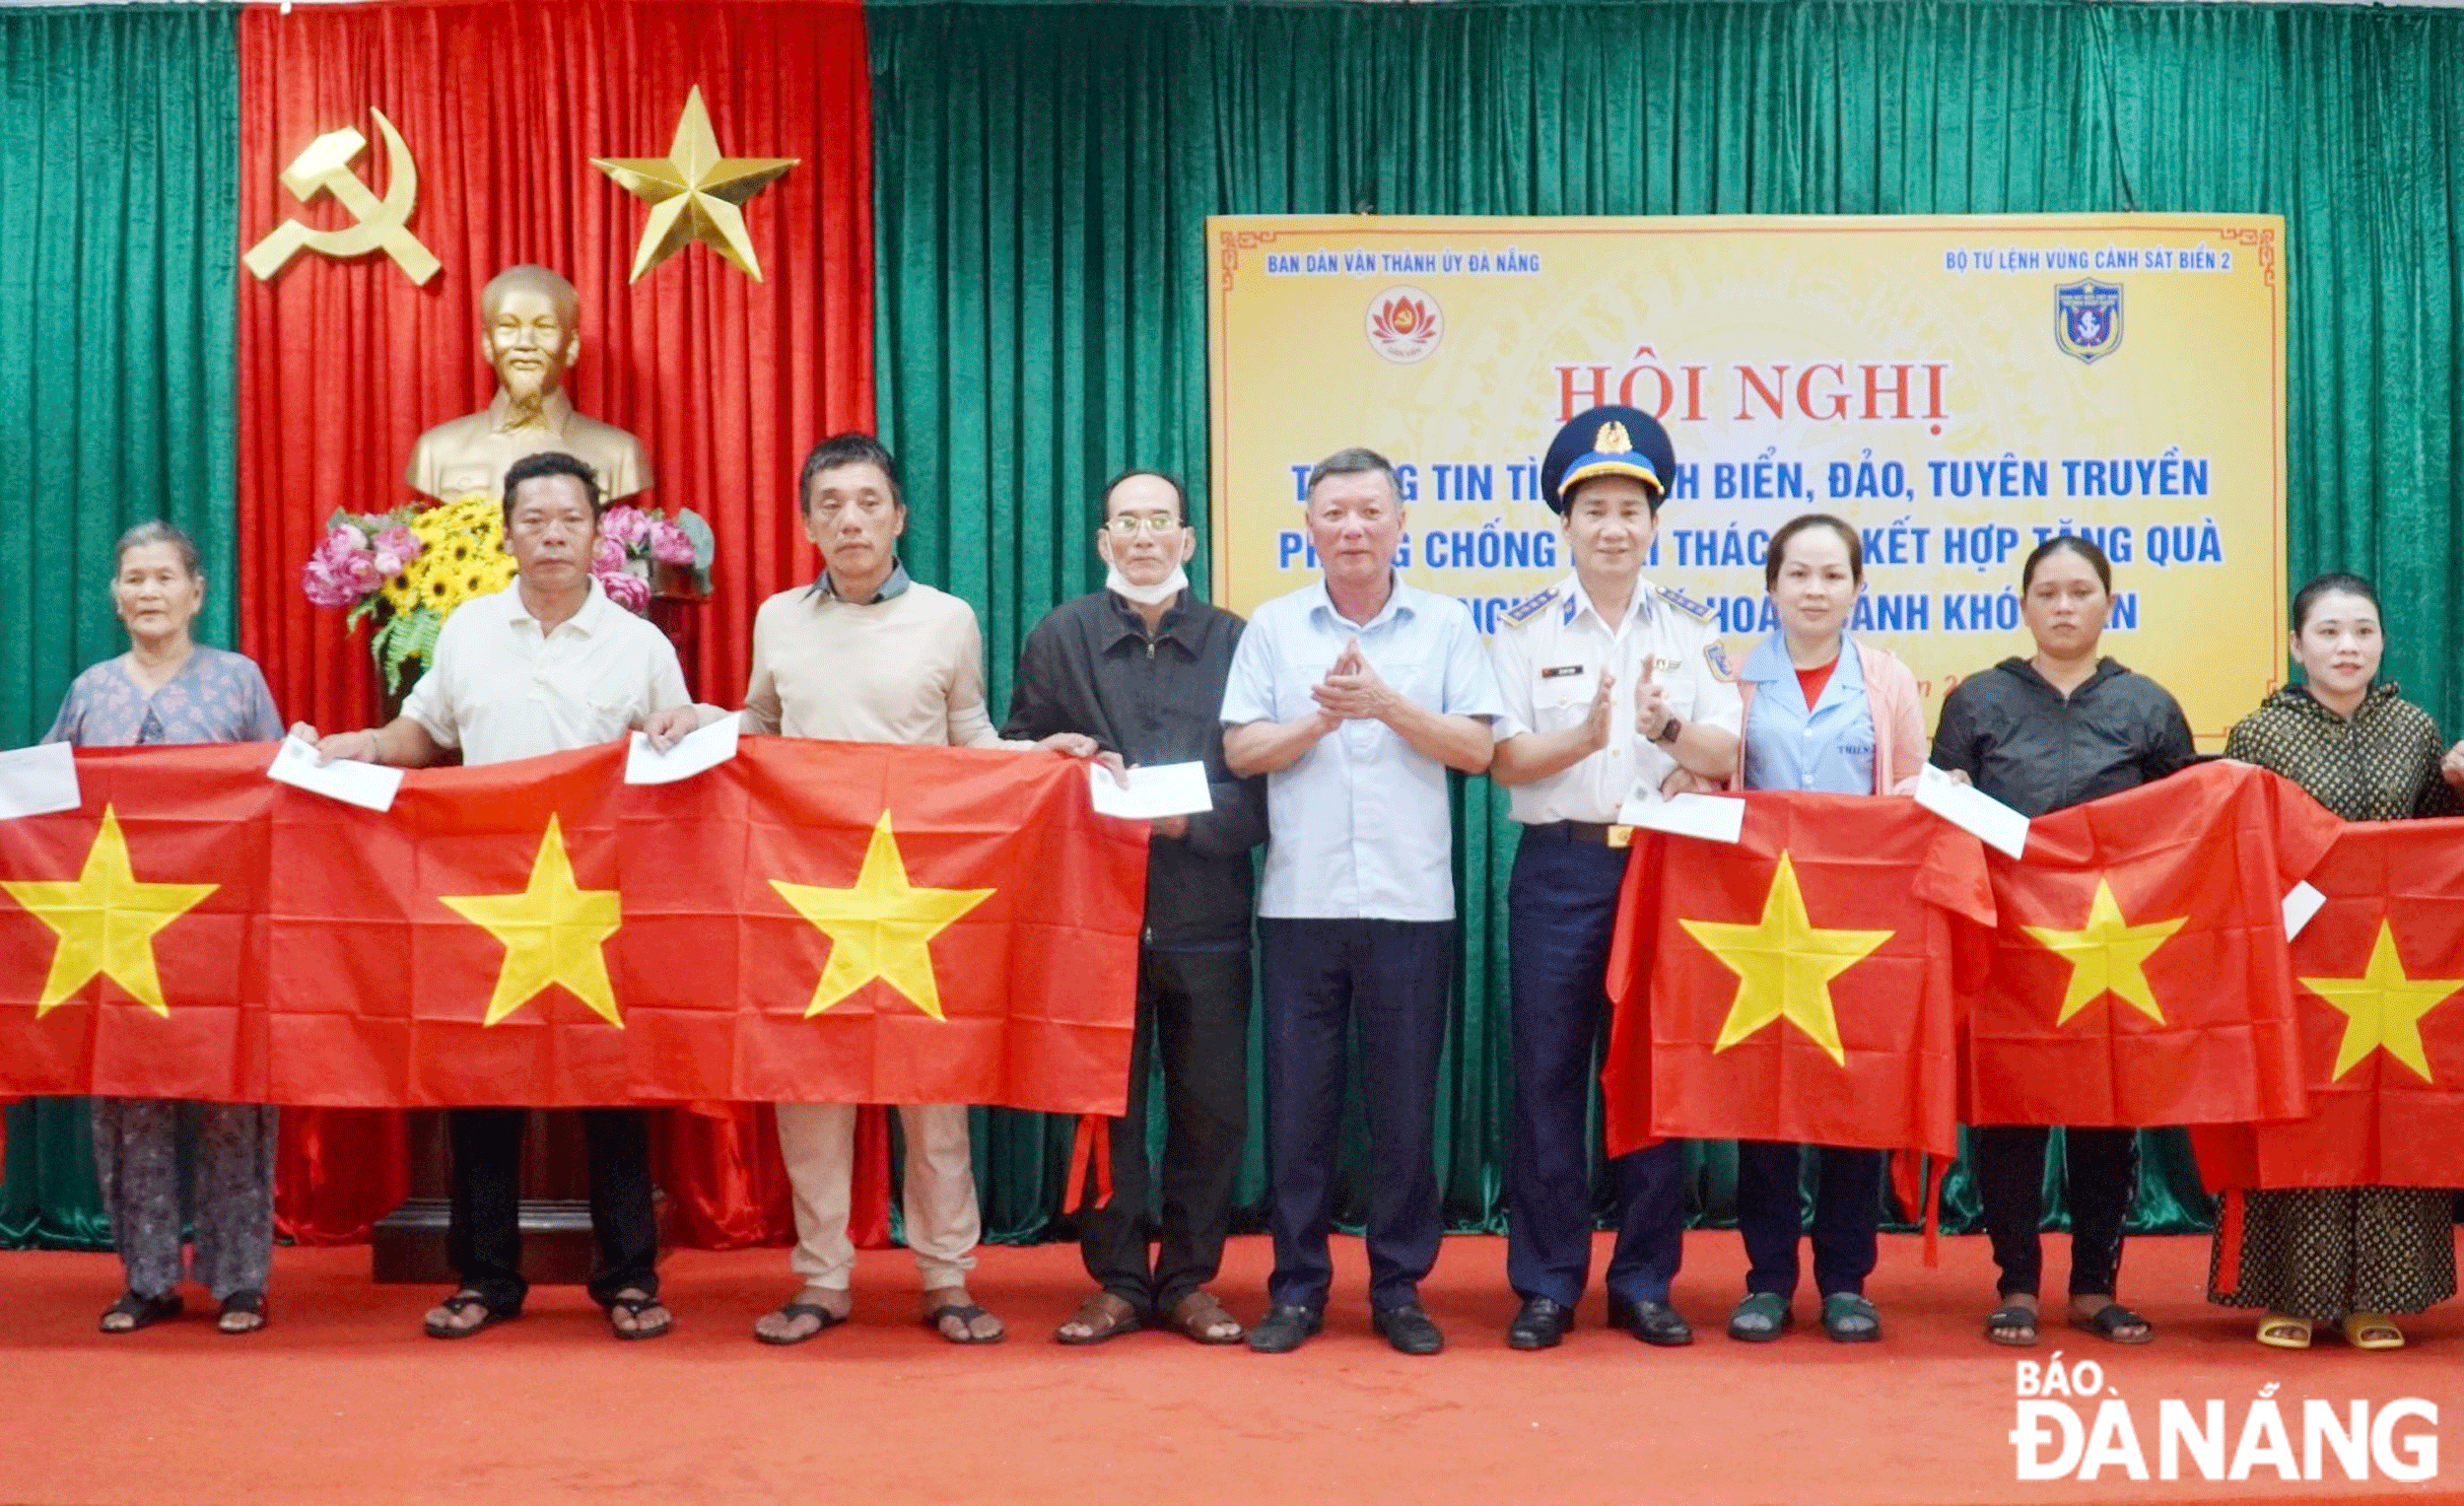 Trưởng ban Dân vận Thành ủy Lê Văn Trung (thứ 5, bên trái sang) cùng Đại tá Lê Huy Sinh, Chính ủy Bộ Tư lệnh Vùng Cảnh sát biển 2 (thứ 4, bên phải sang) trao quà cho bà con khó khăn.  Ảnh: N.QUANG